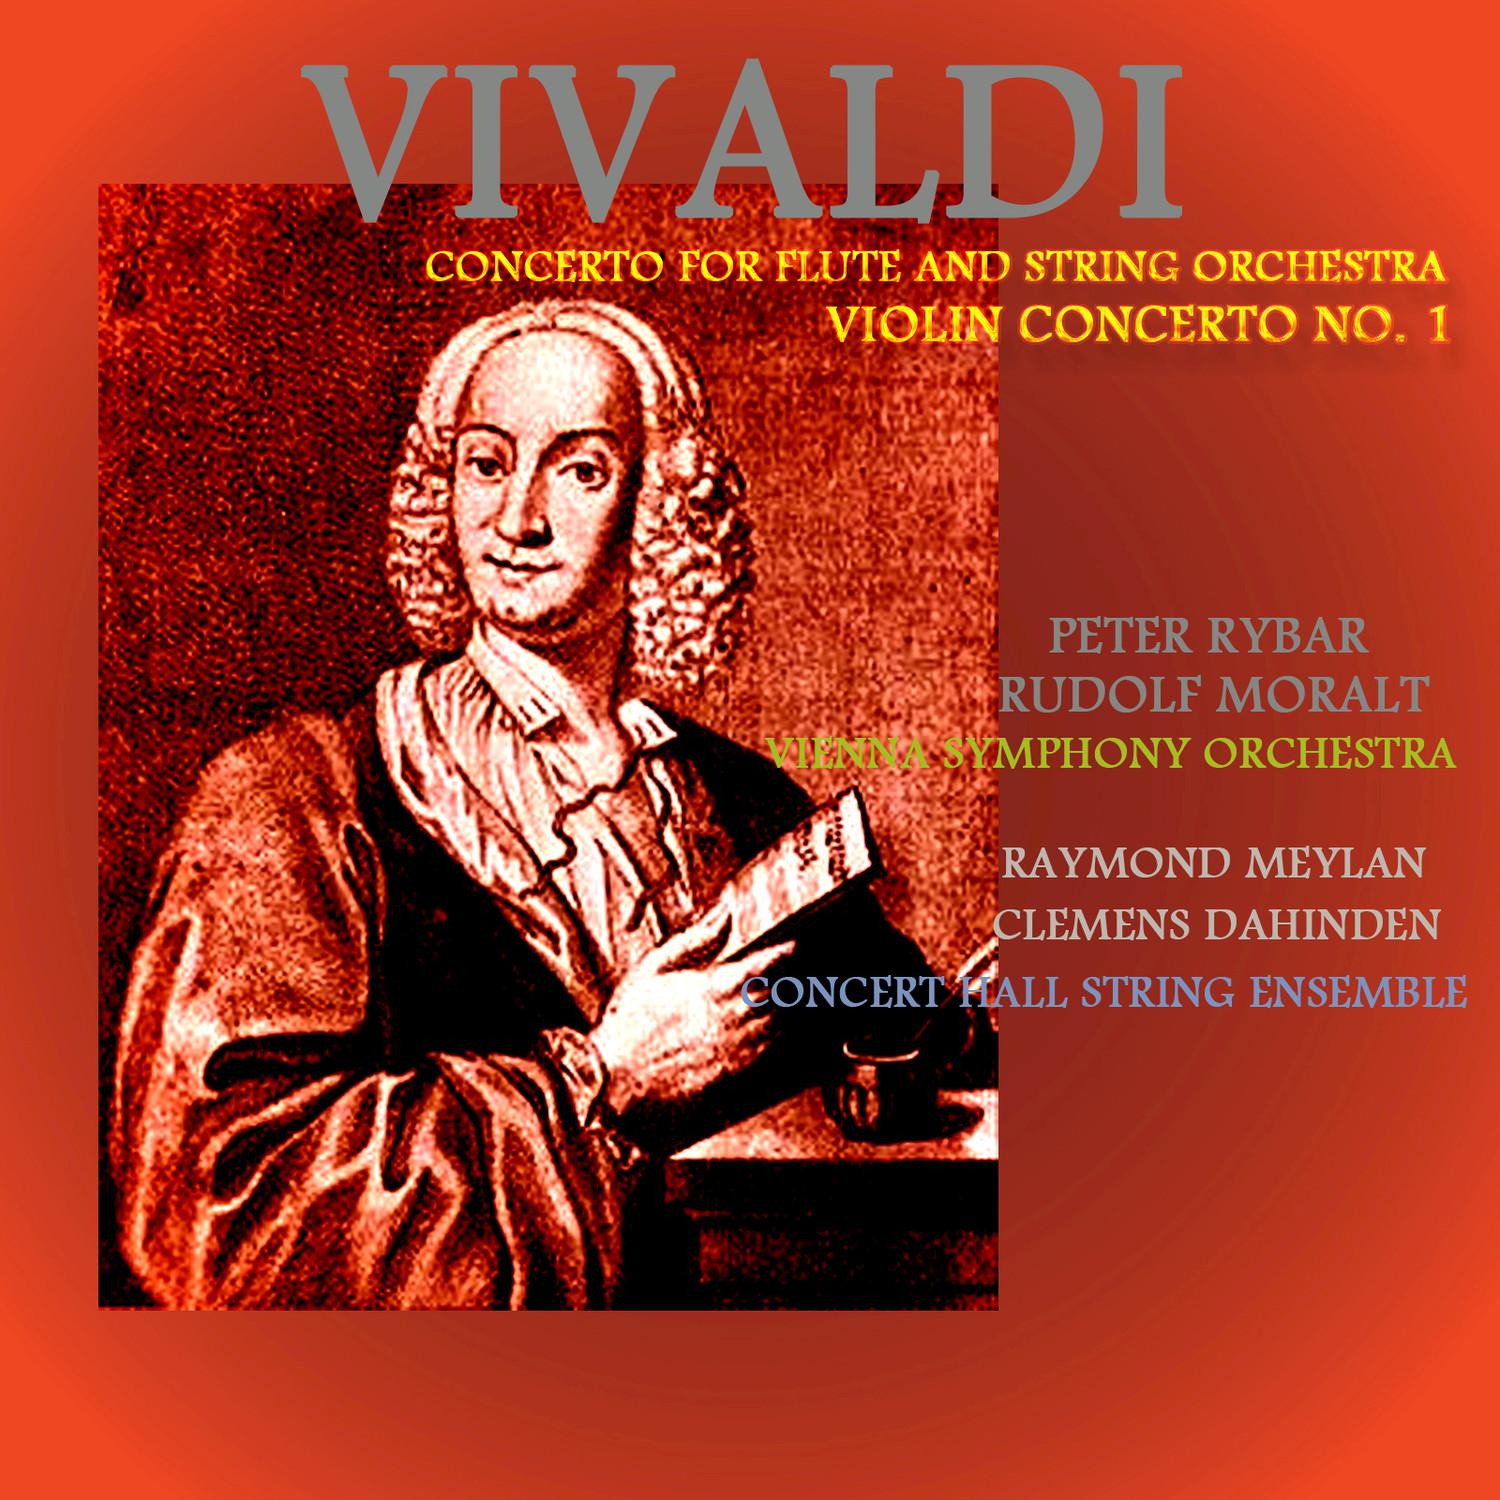 Vivaldi: Violin Concerto No. 1 In G Minor & Concerto for Flute and String Orchestra